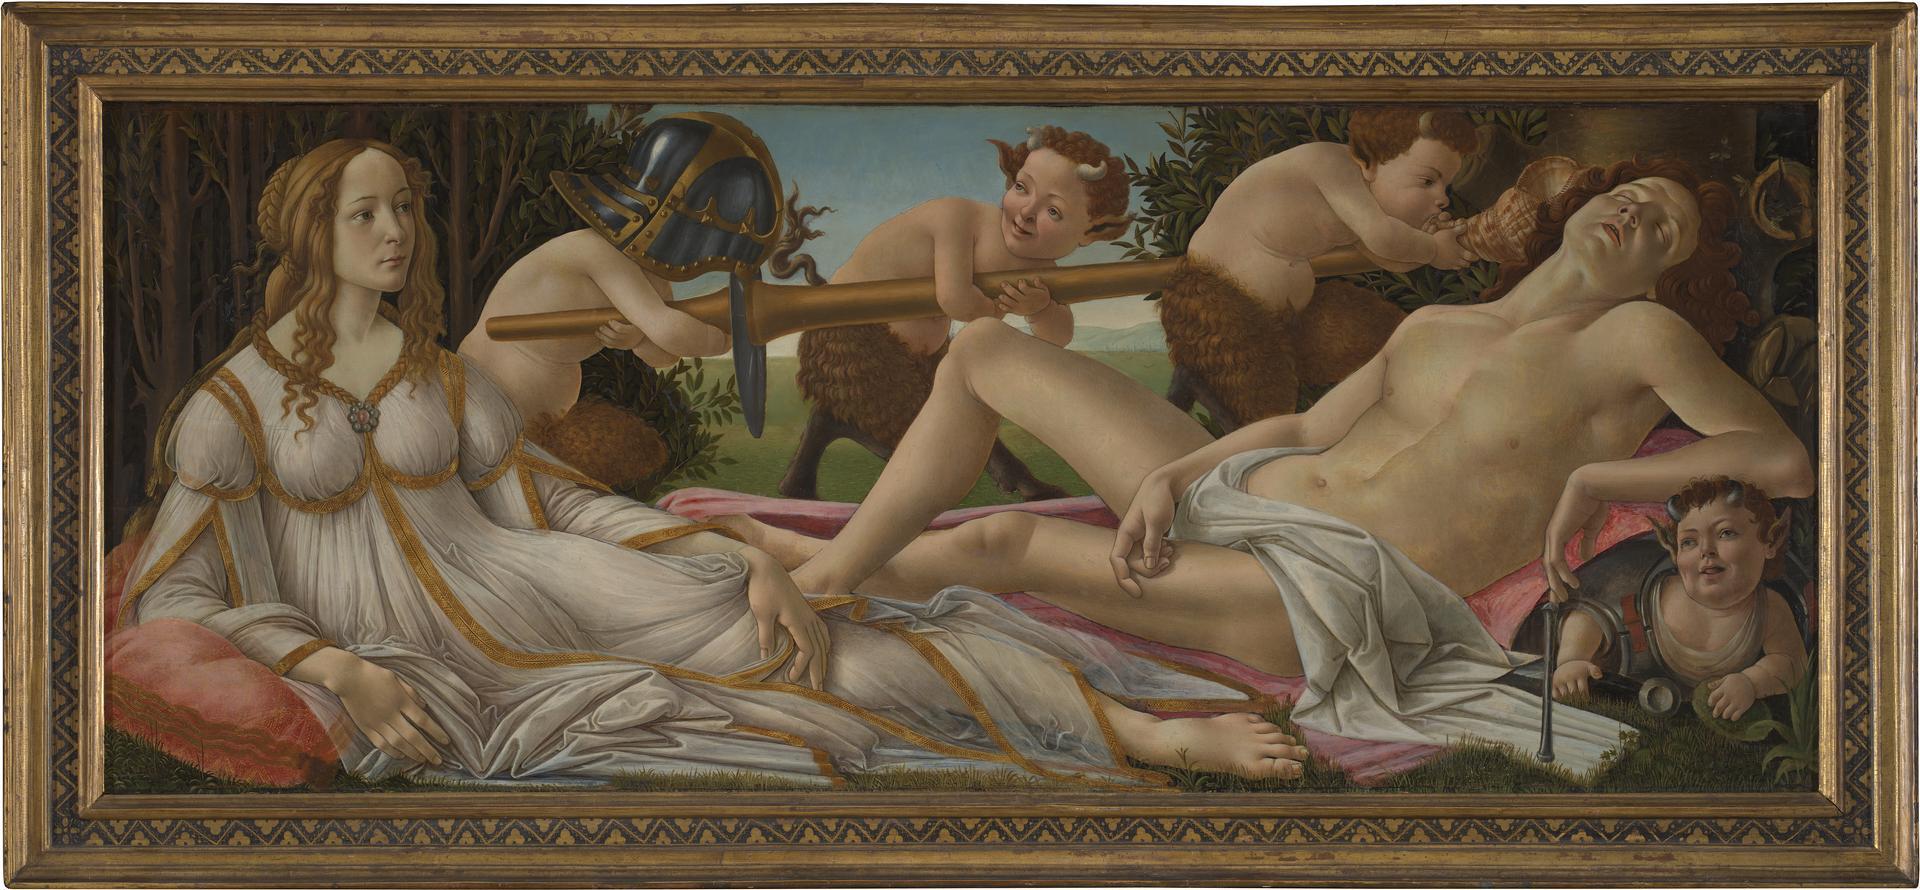 Venus and Mars, 1480's. Botticelli